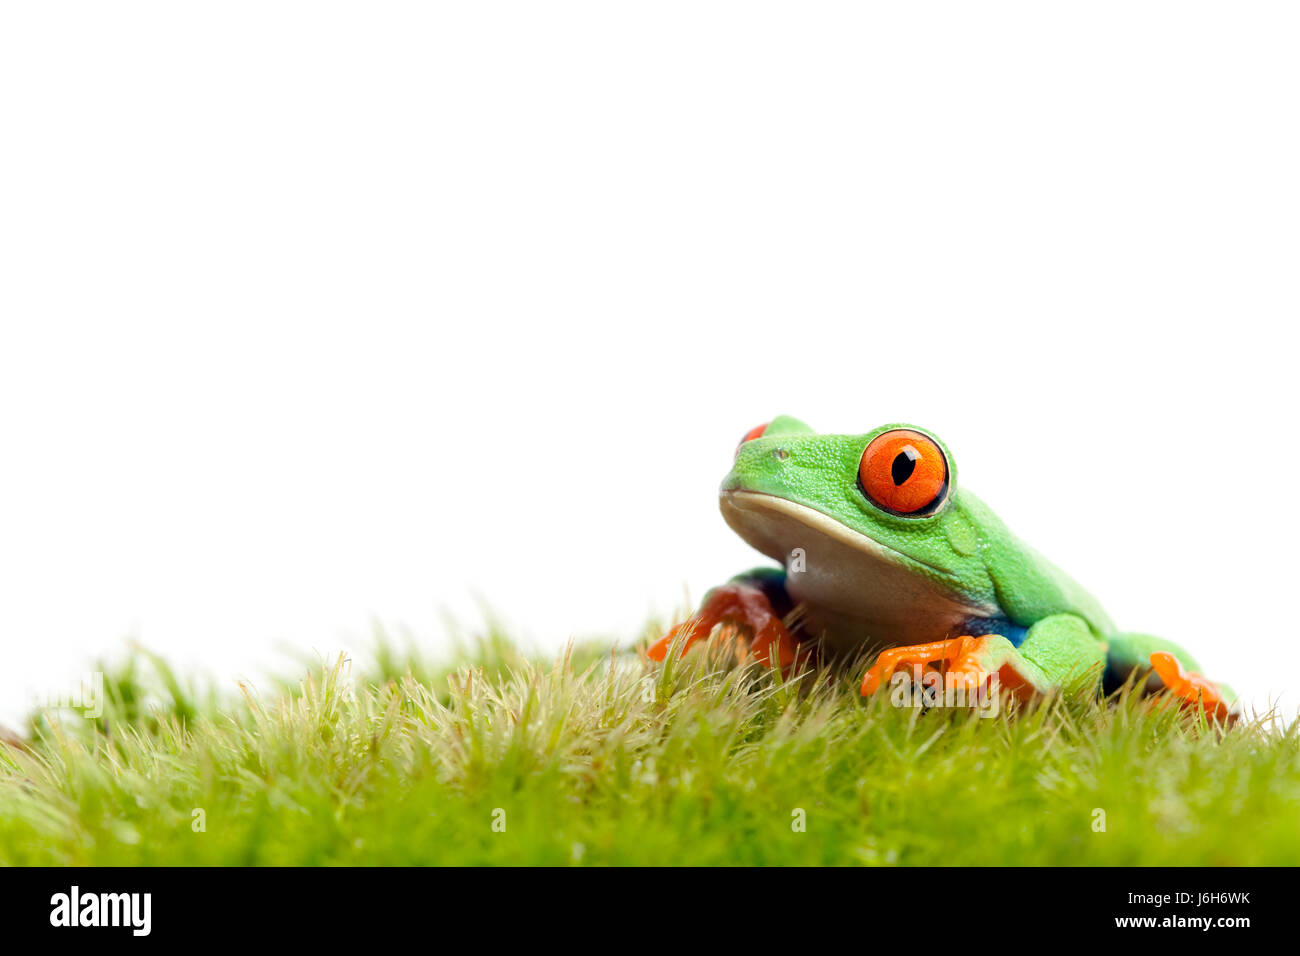 isolierte Amphibien Frosch Moos Rasen grüner Natur isolierten tierischen Amphibien Auge Stockfoto